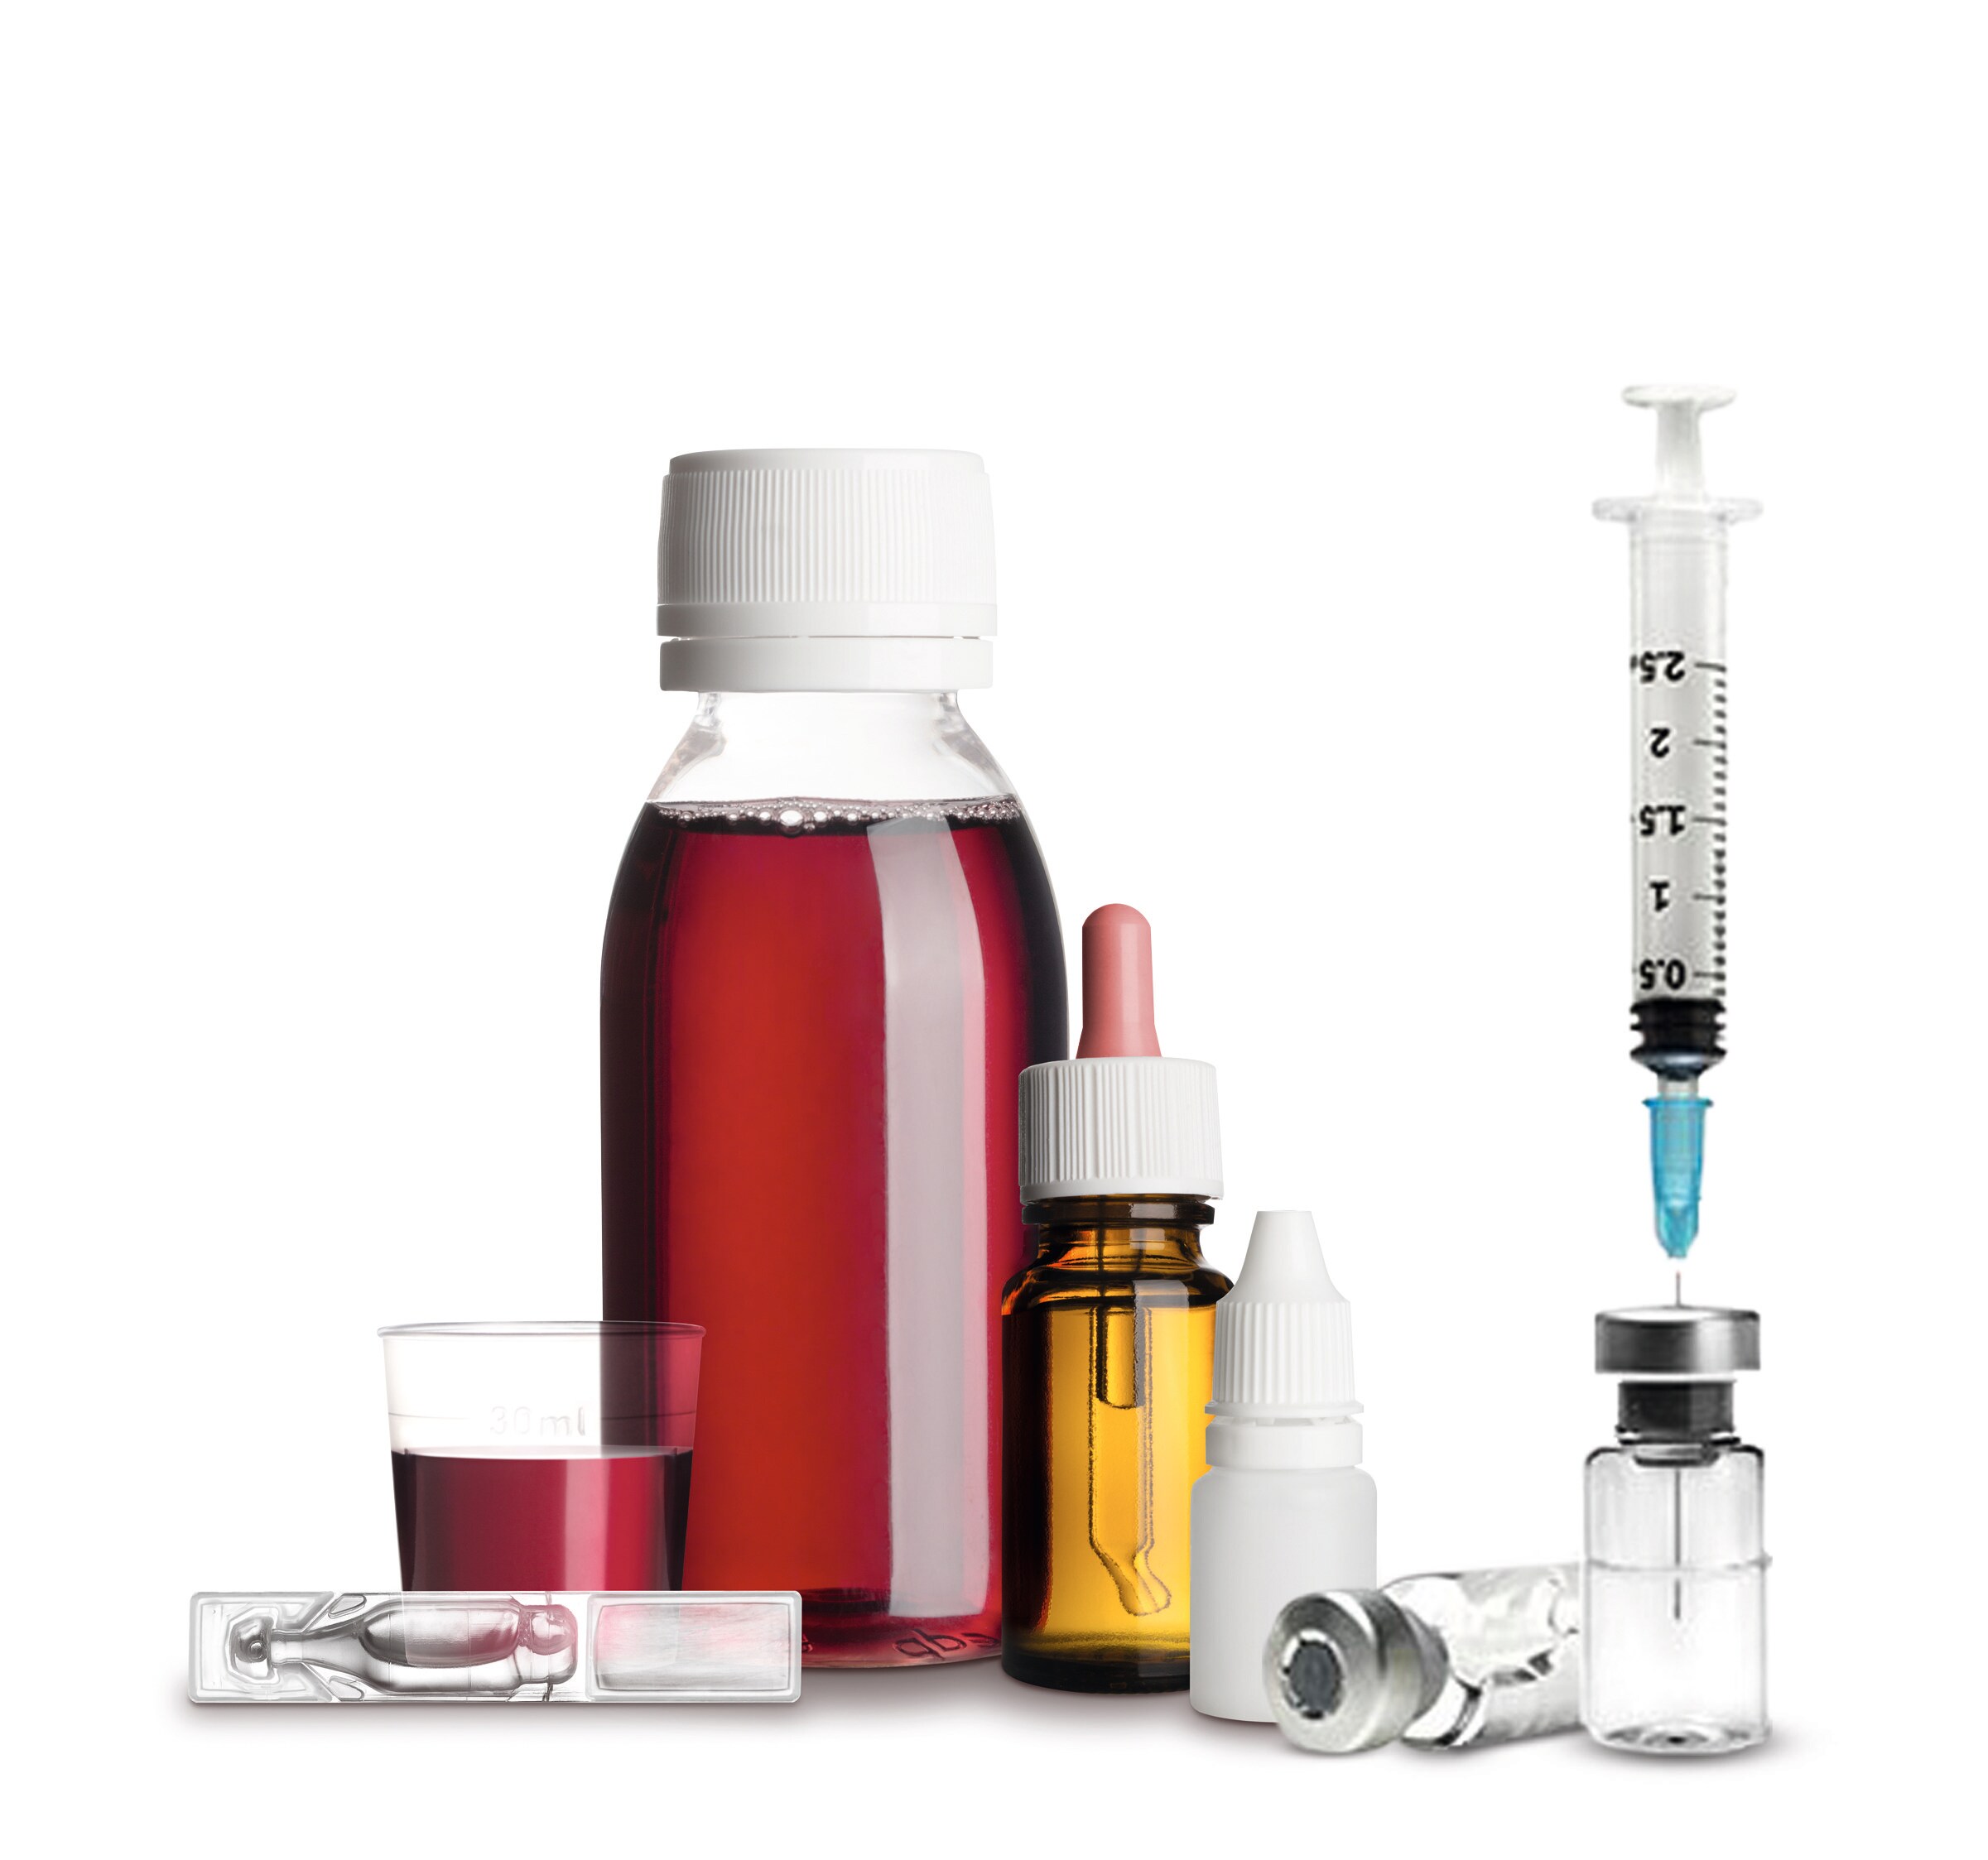 Liquid dose formulations present risk mitigation challenges for drug manufacturers